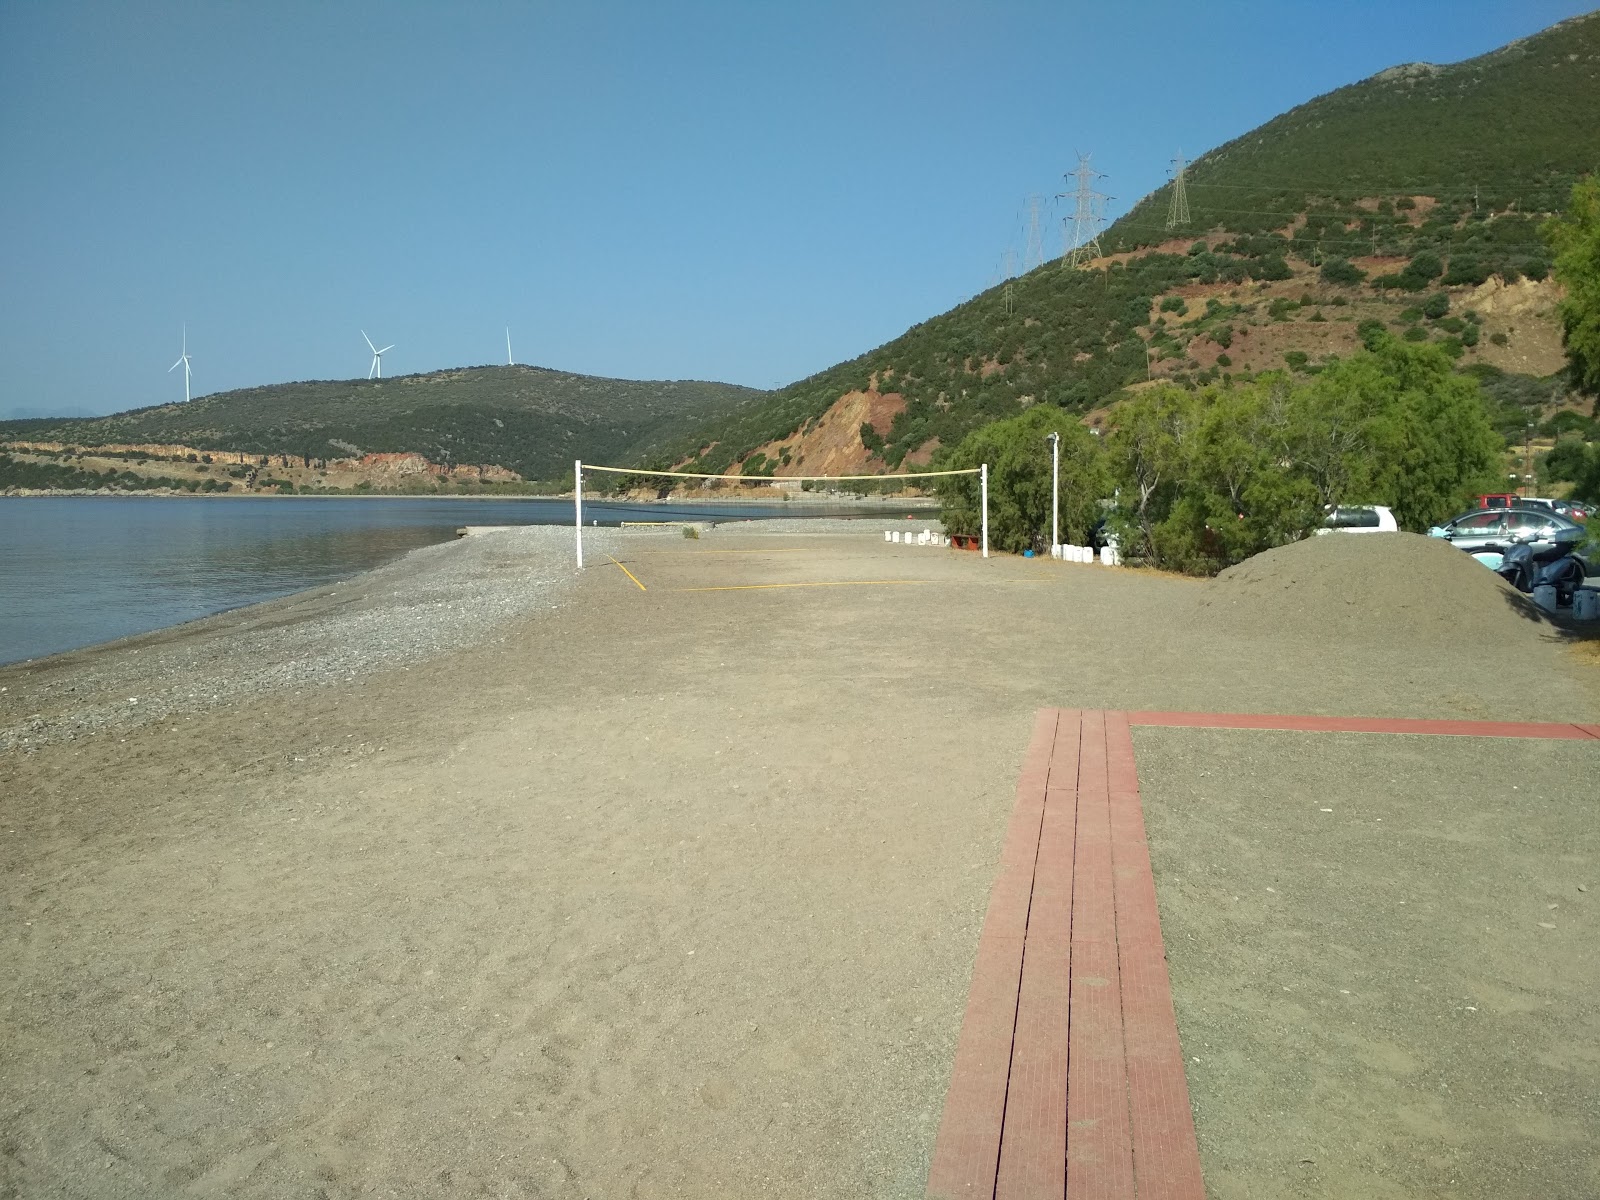 Delphi beach'in fotoğrafı küçük koy ile birlikte